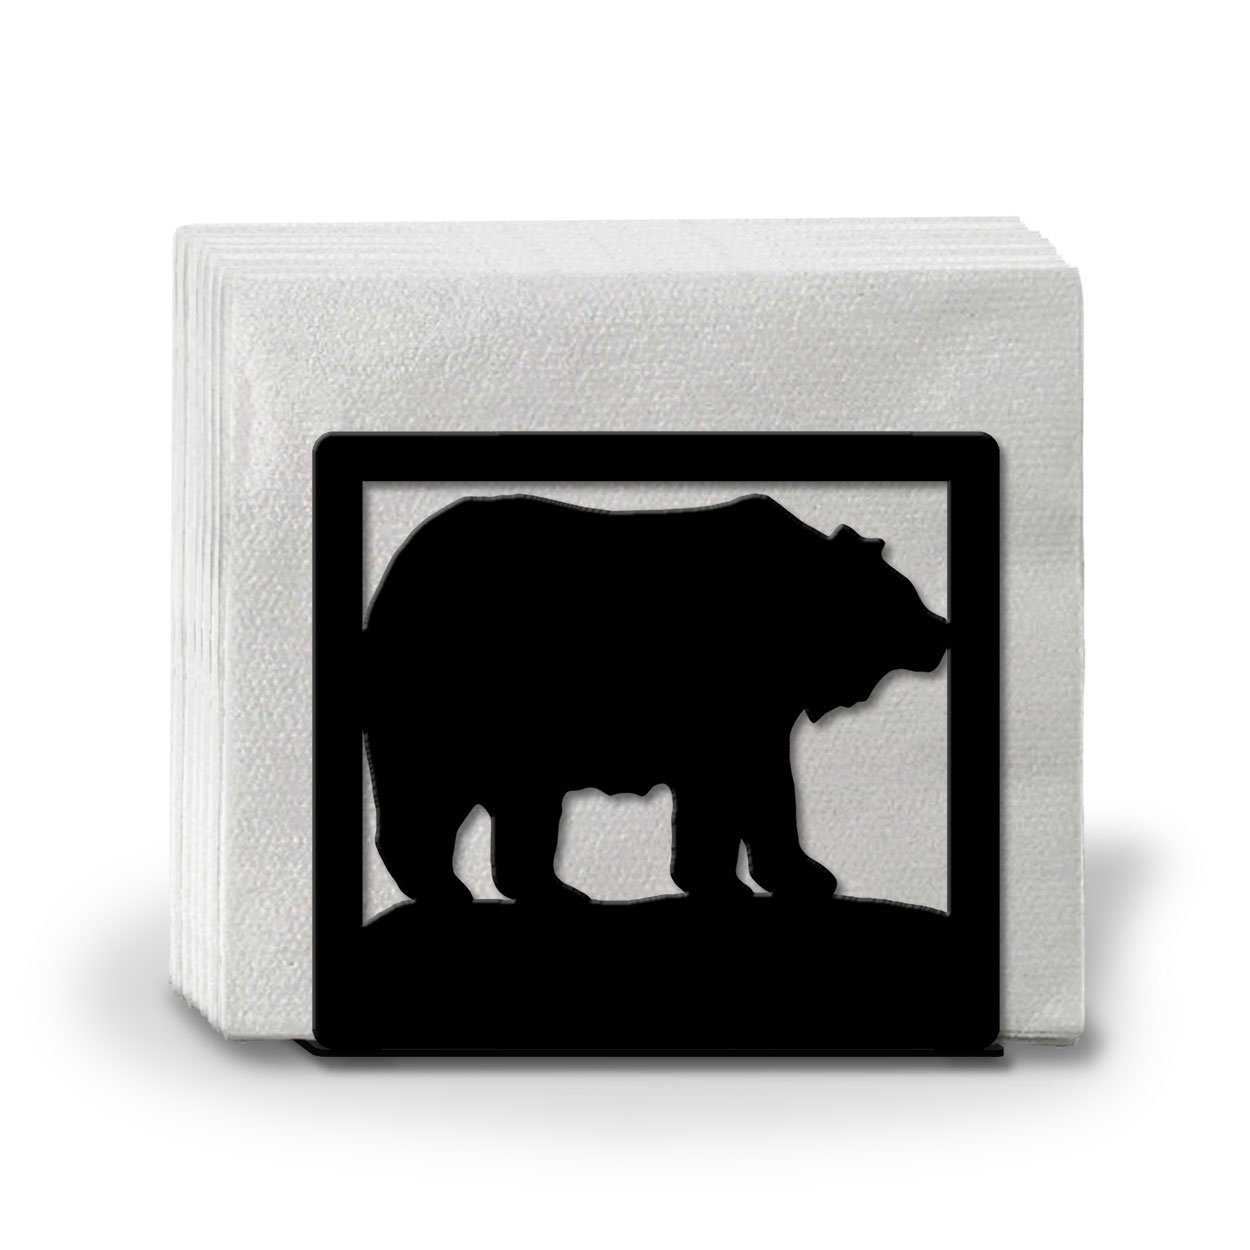 621101 - Bears Metal Napkin or Letter Holder - Choose Color